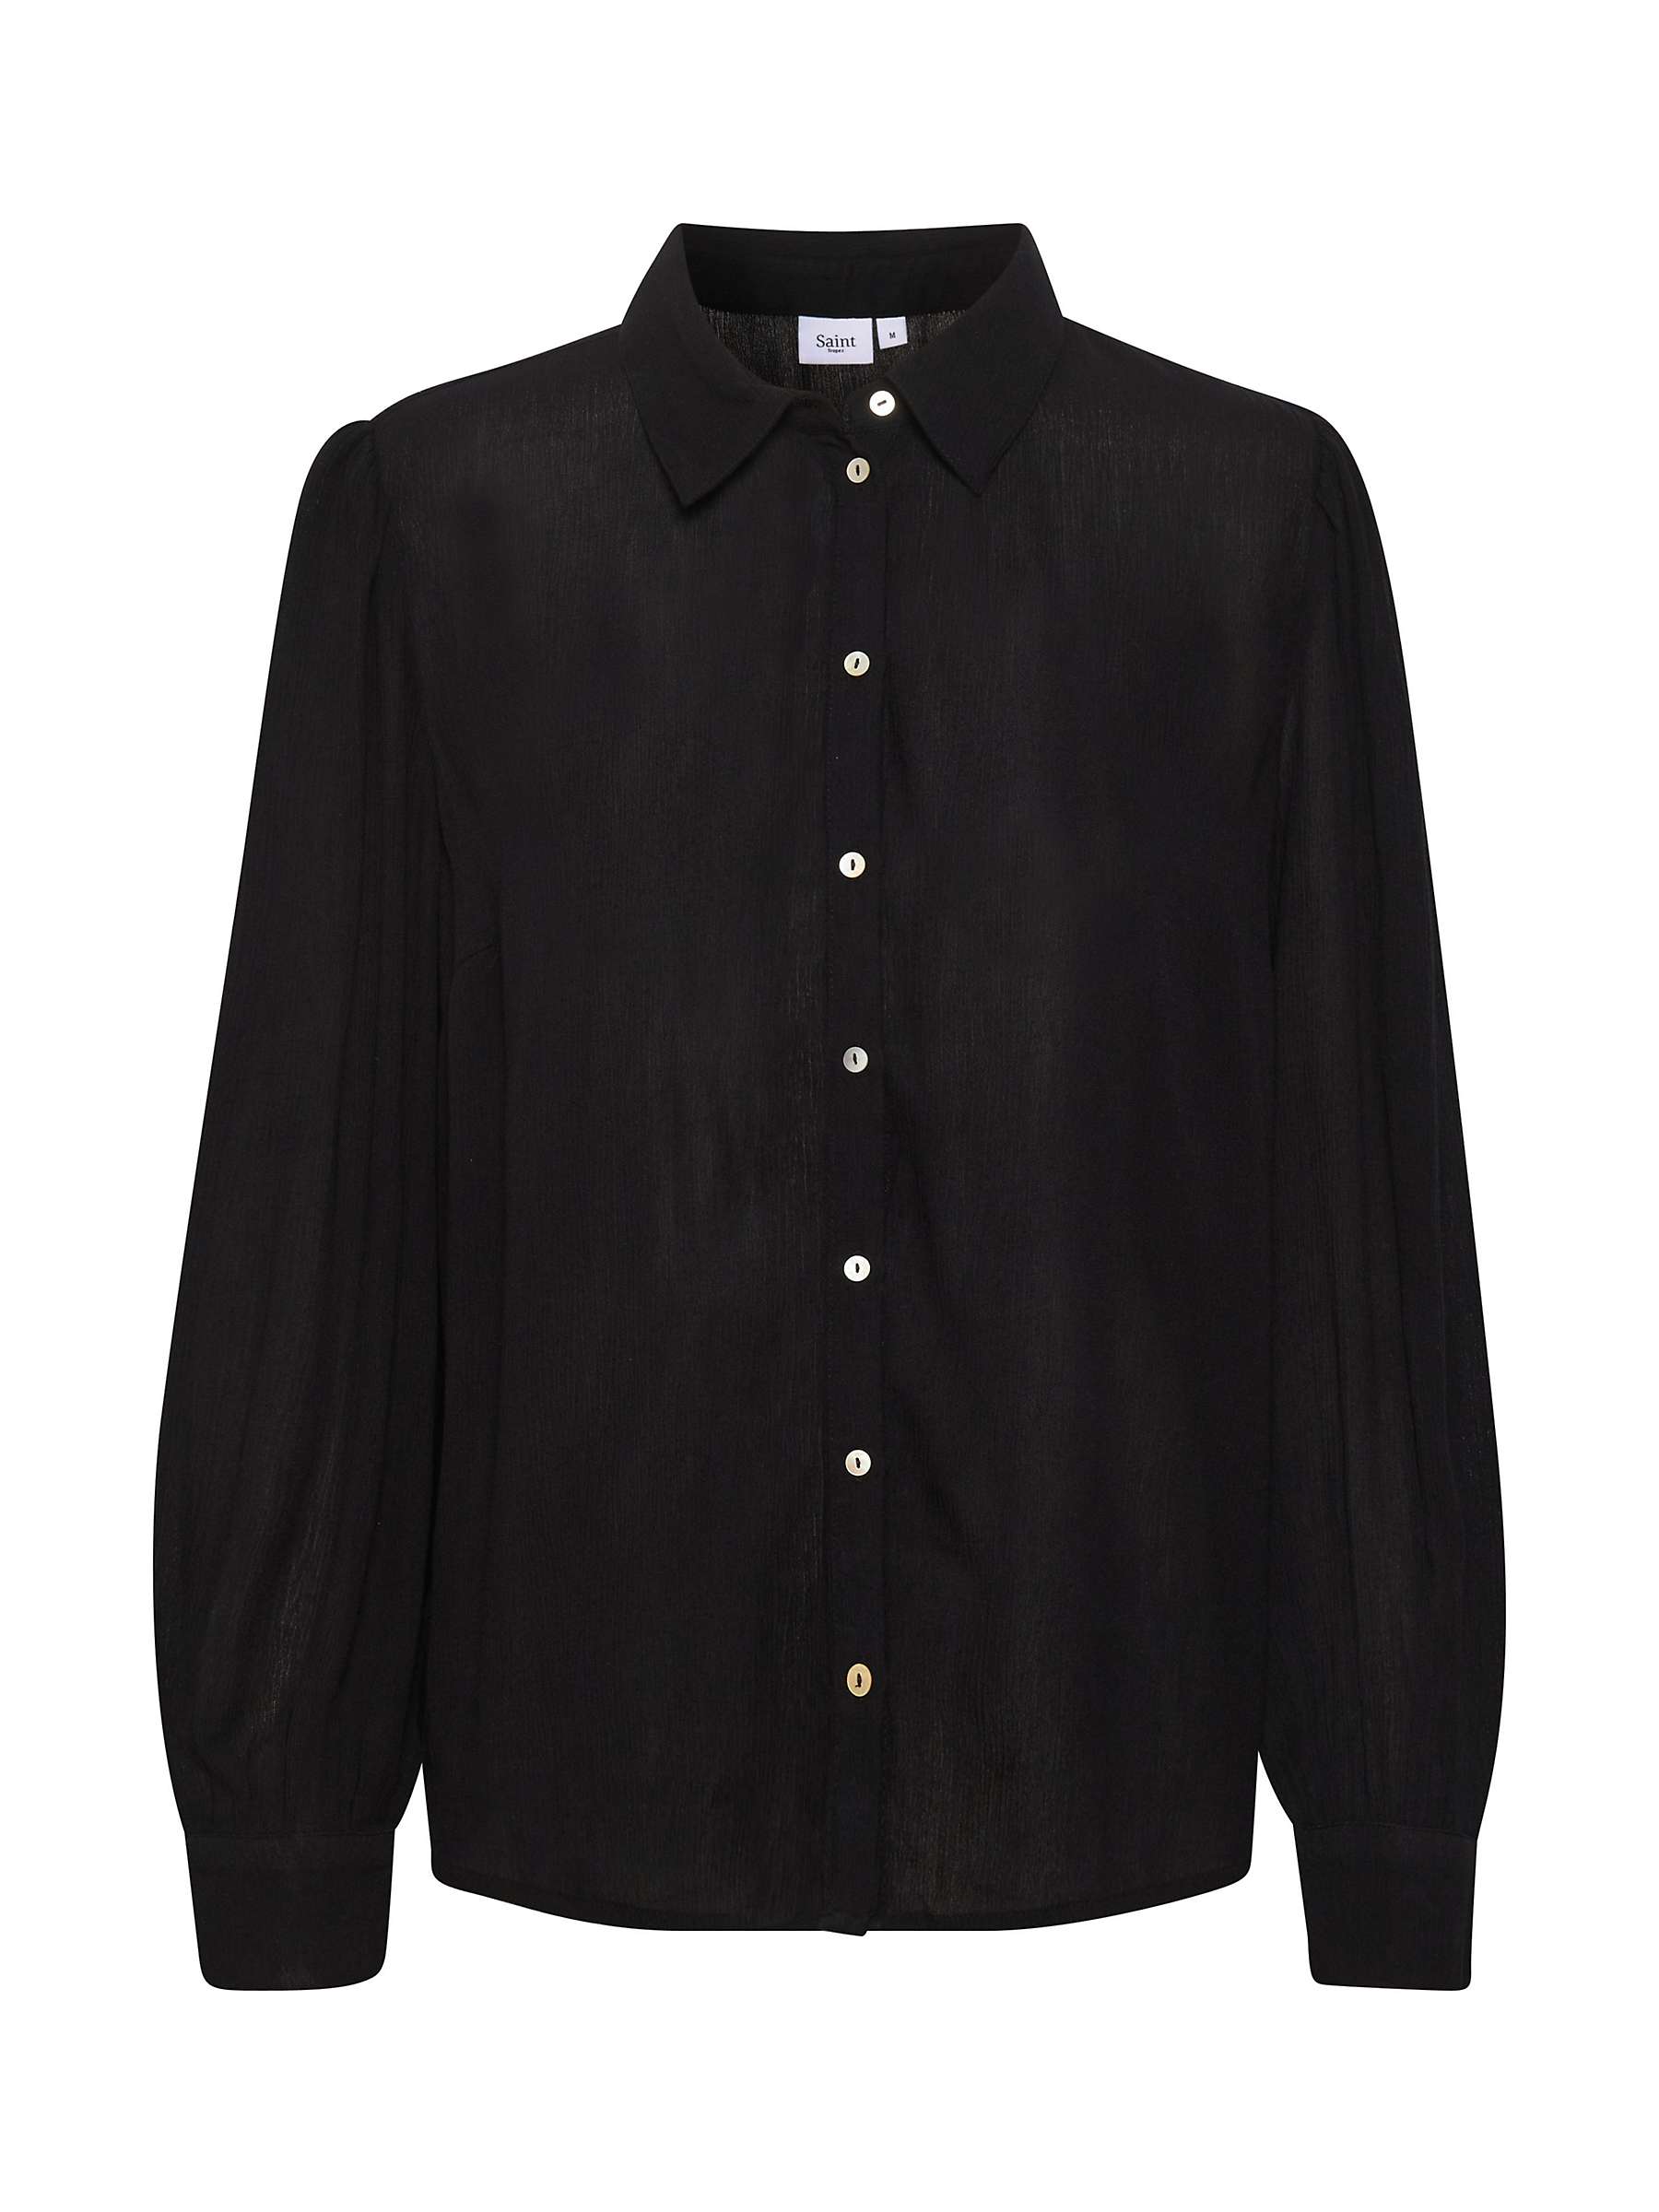 Buy Saint Tropez Alba Casual Fit Button Shirt Online at johnlewis.com